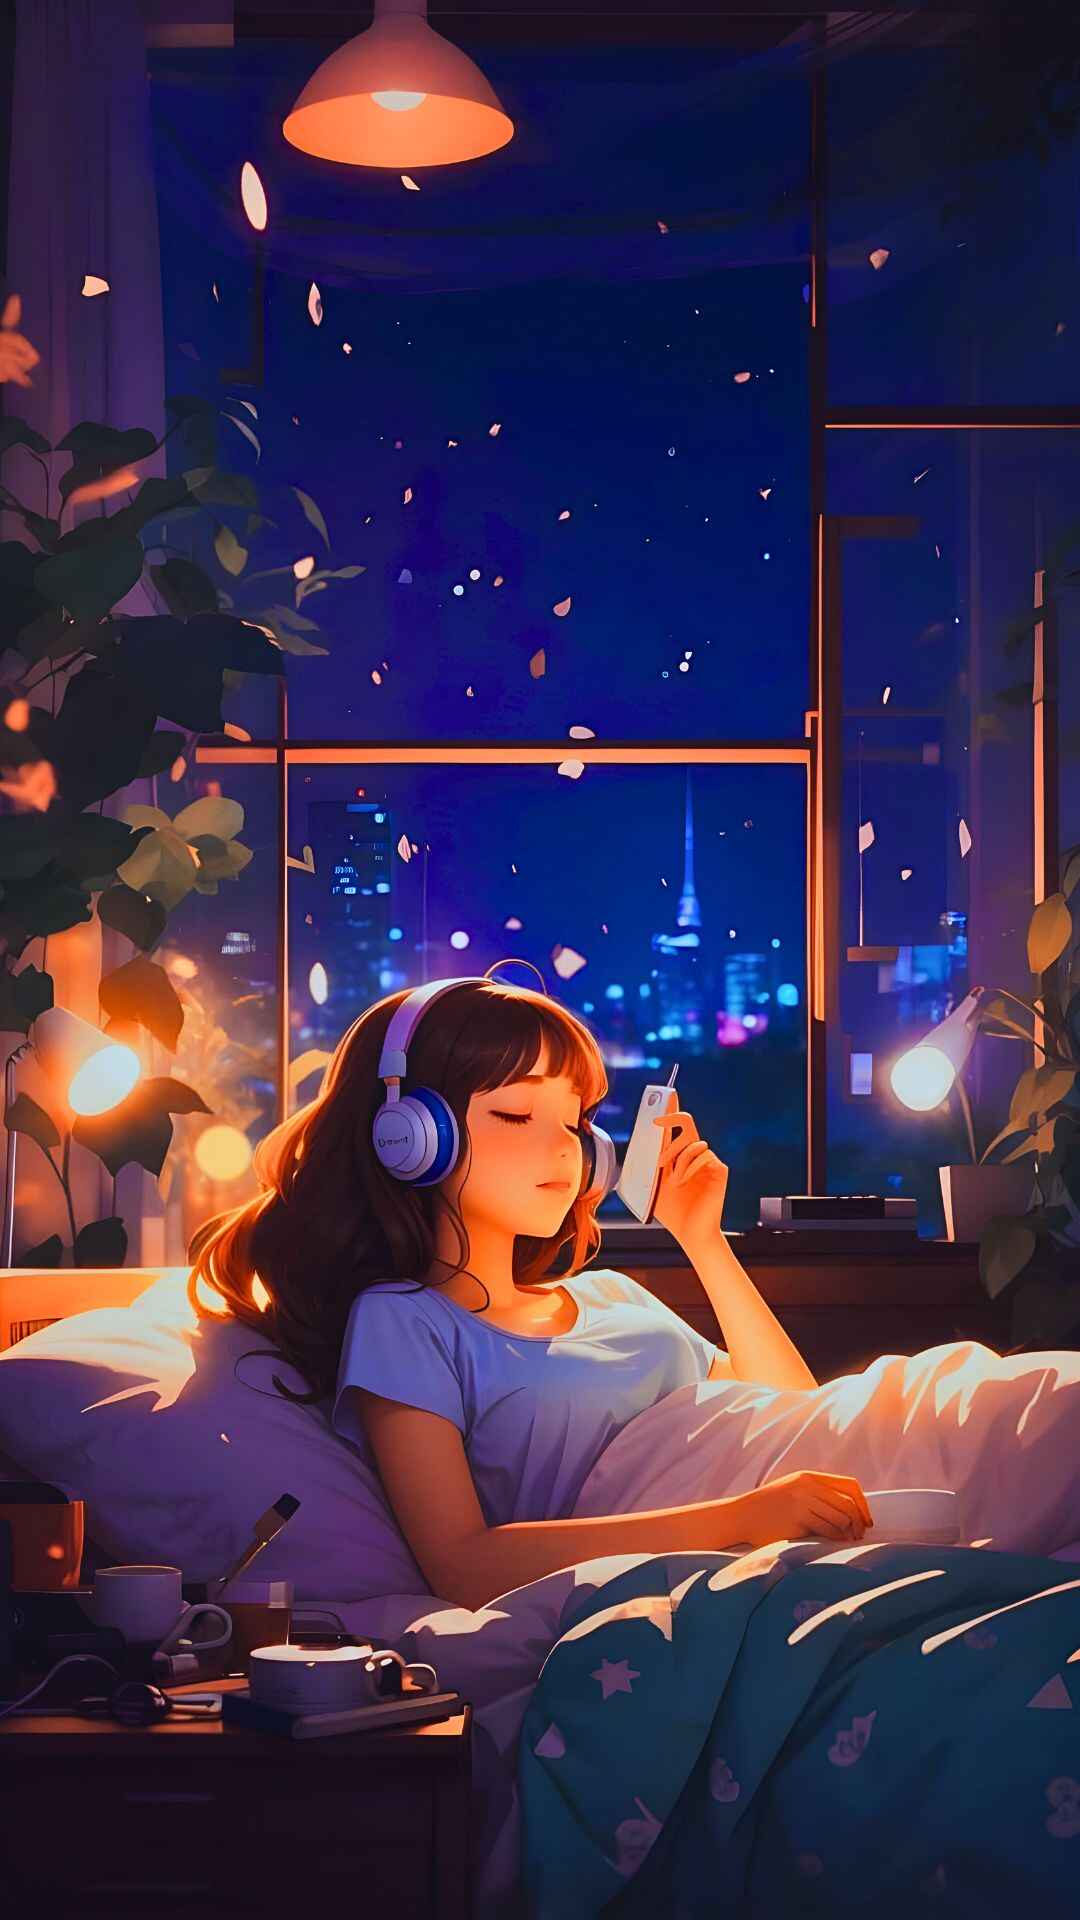 Anime Girl With Headphones Photos